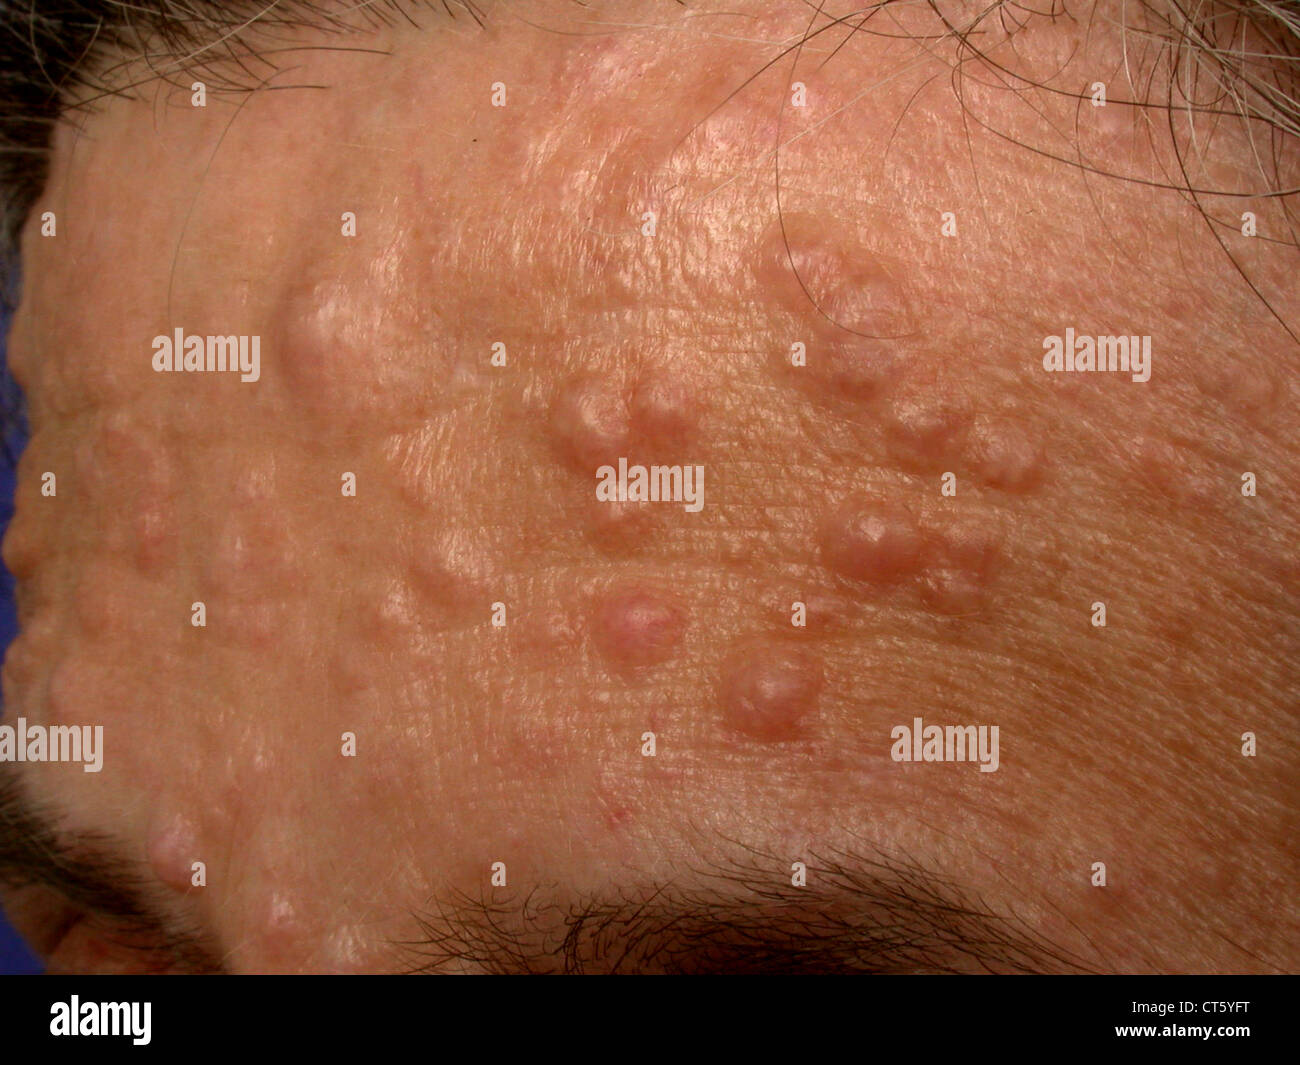 Seltene Hautkrankheit Stockfotos und bilder Kaufen Alamy